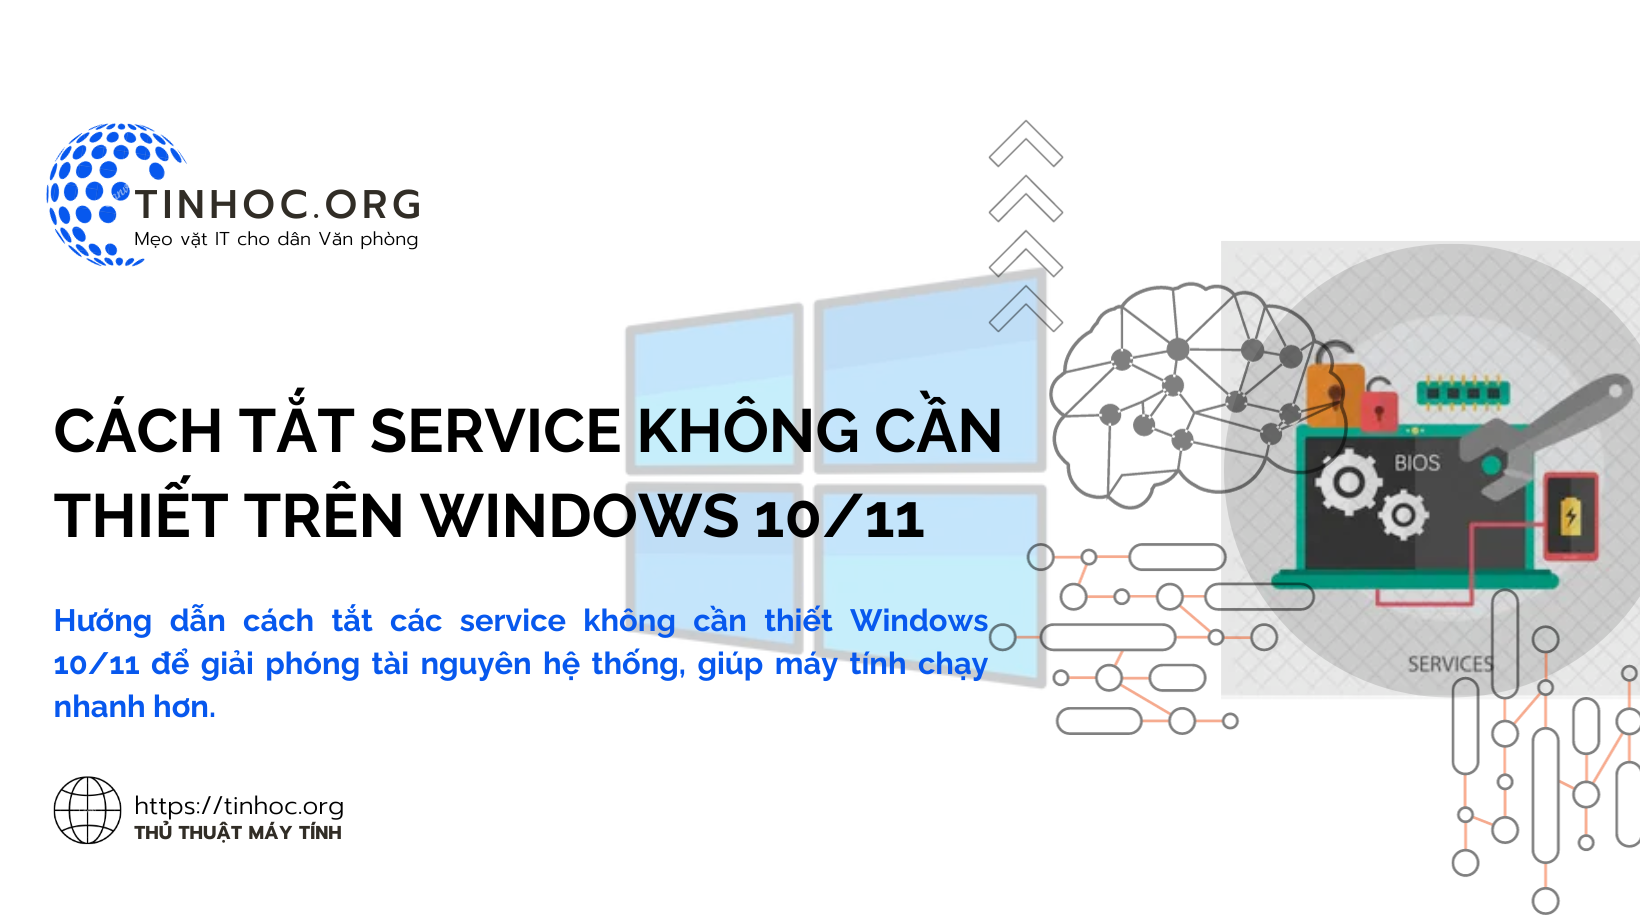 Cách tắt service không cần thiết trên Windows 10/11